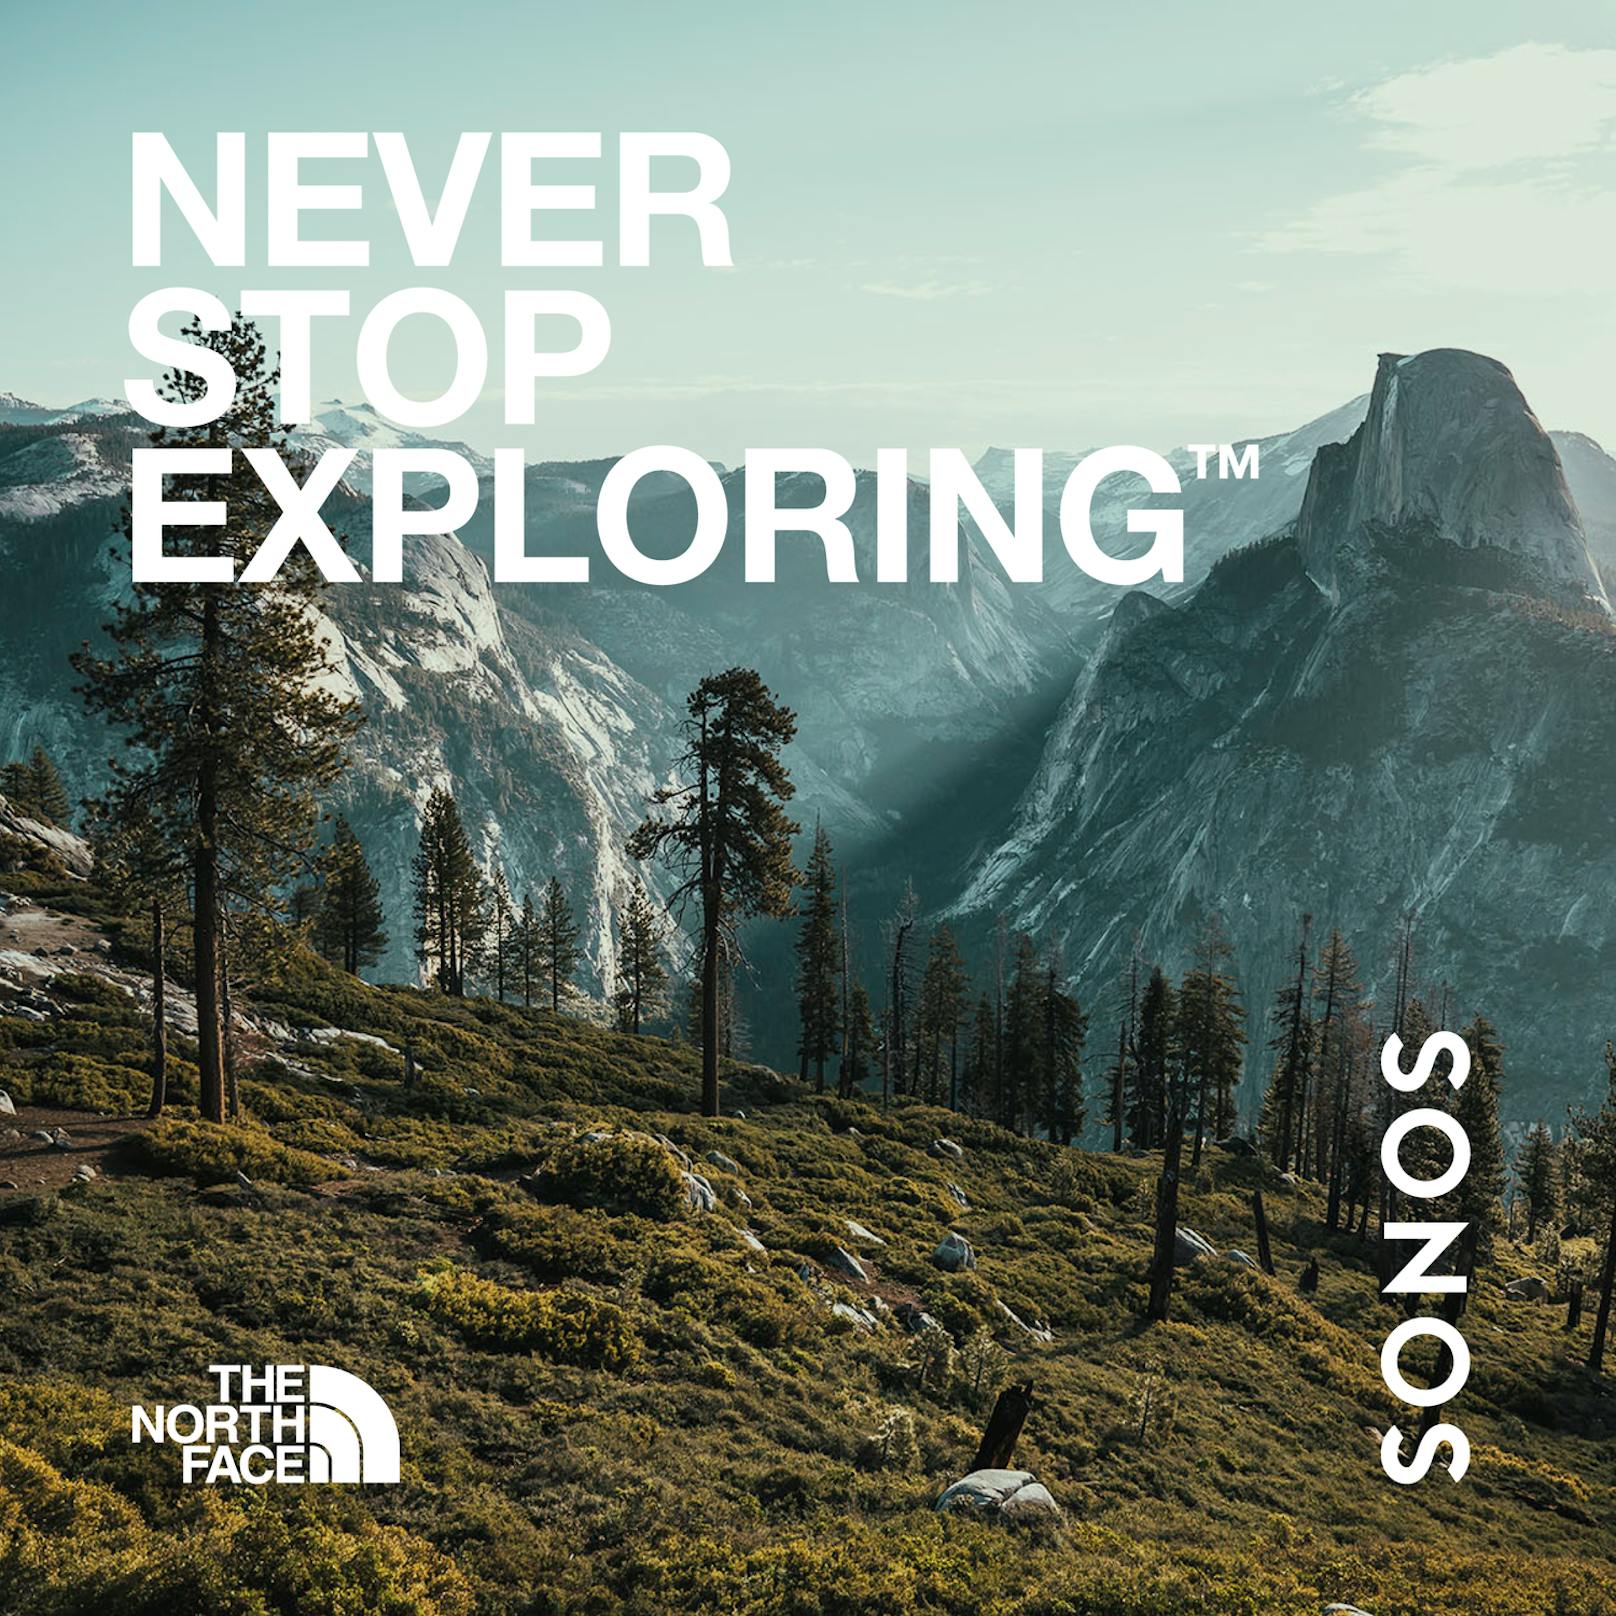 Sonos und The North Face laden Fans zu einer akustischen Entdeckungsreise in die Natur ein.